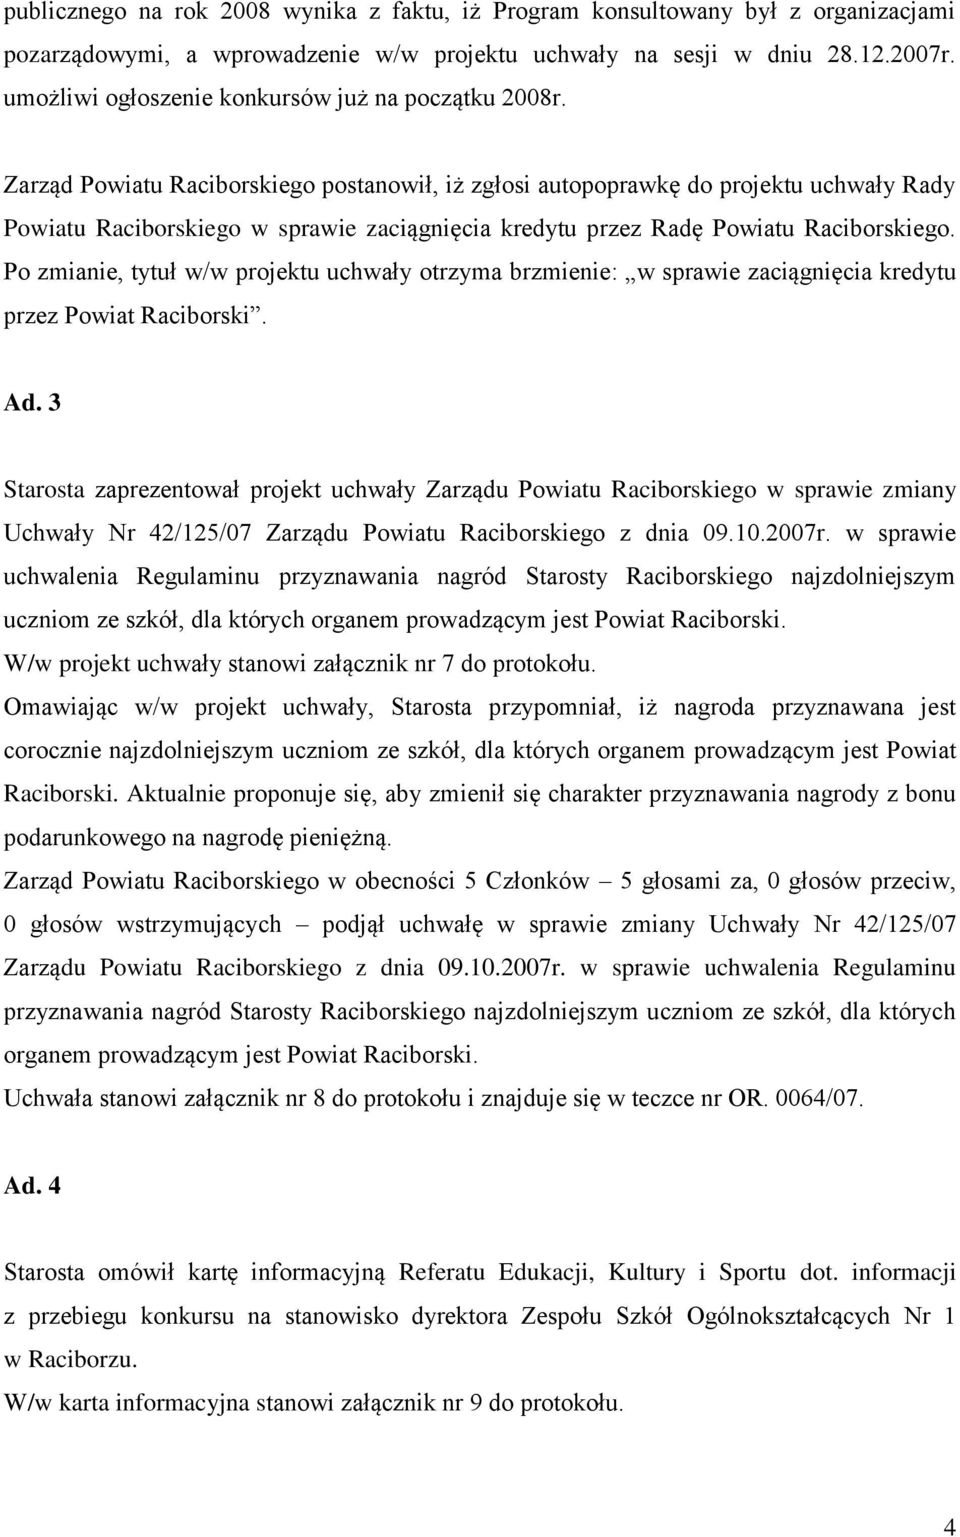 Zarząd Powiatu Raciborskiego postanowił, iż zgłosi autopoprawkę do projektu uchwały Rady Powiatu Raciborskiego w sprawie zaciągnięcia kredytu przez Radę Powiatu Raciborskiego.